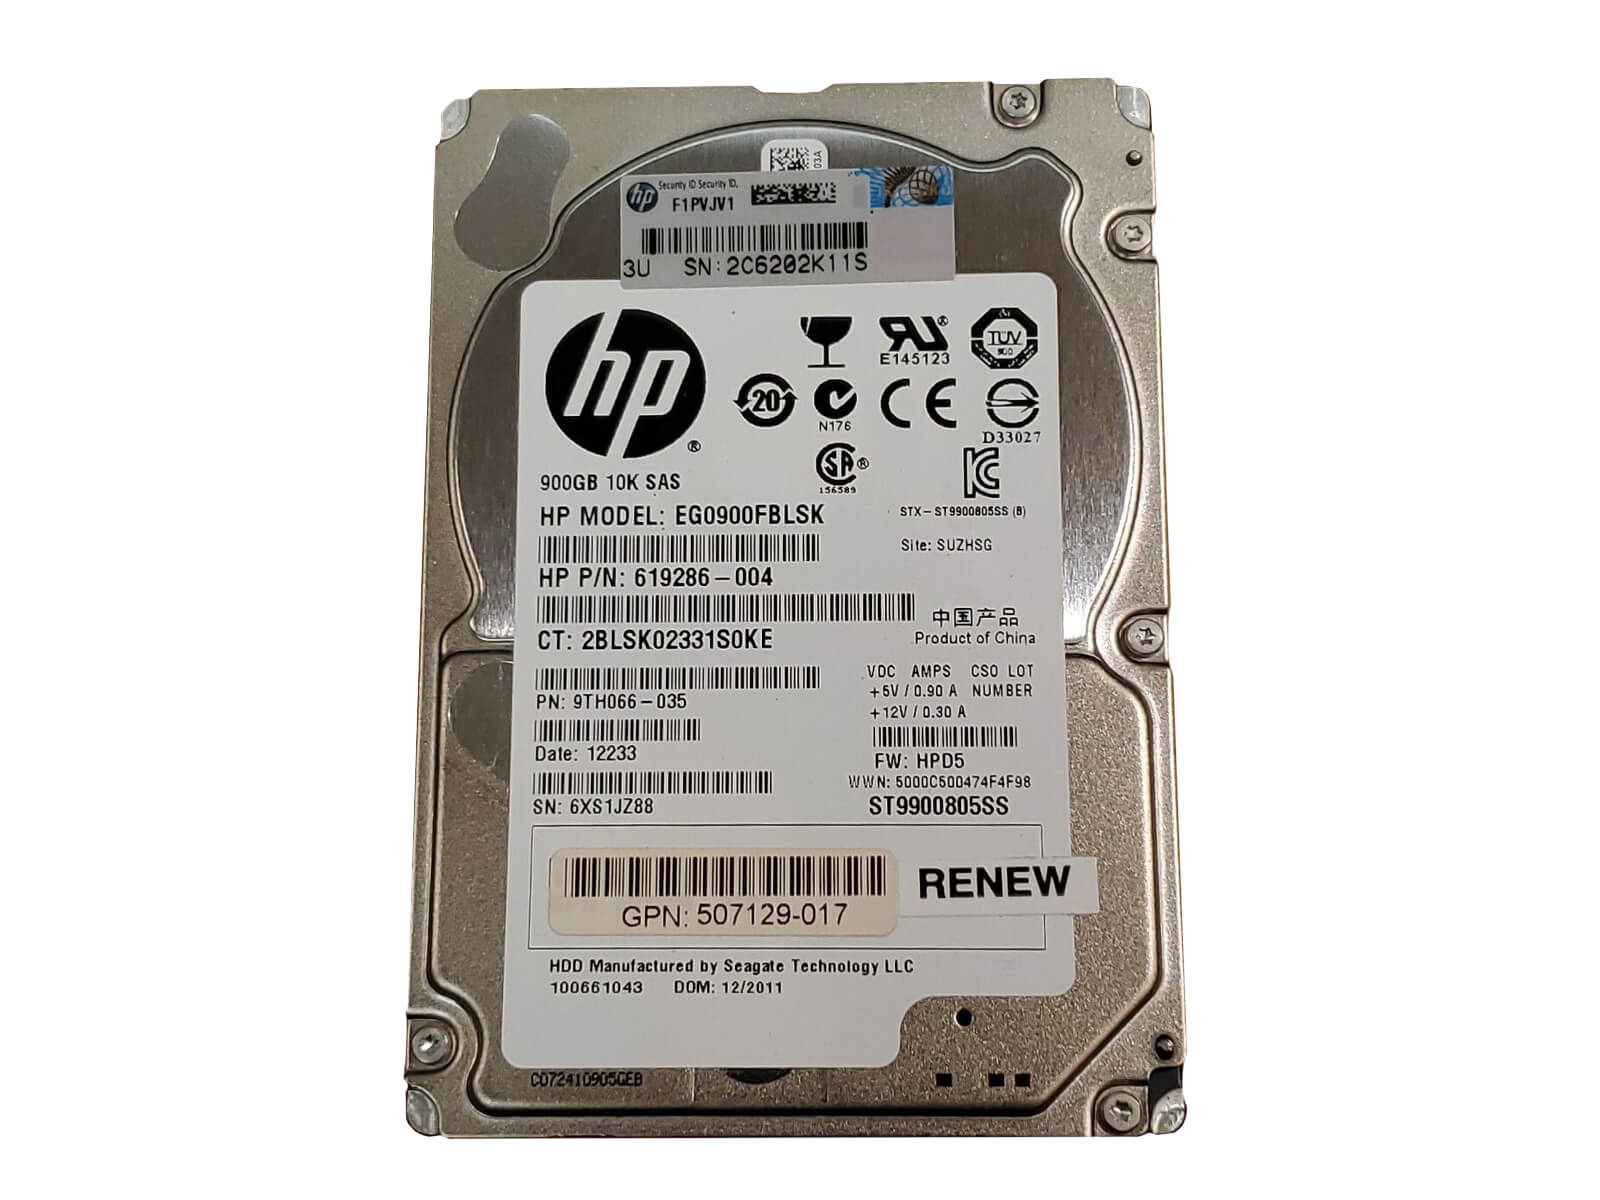 HP 619286-004 900GB SAS 6Gb/s 10K rpm 2.5" SFF 512e HDD Hard Disk Drive